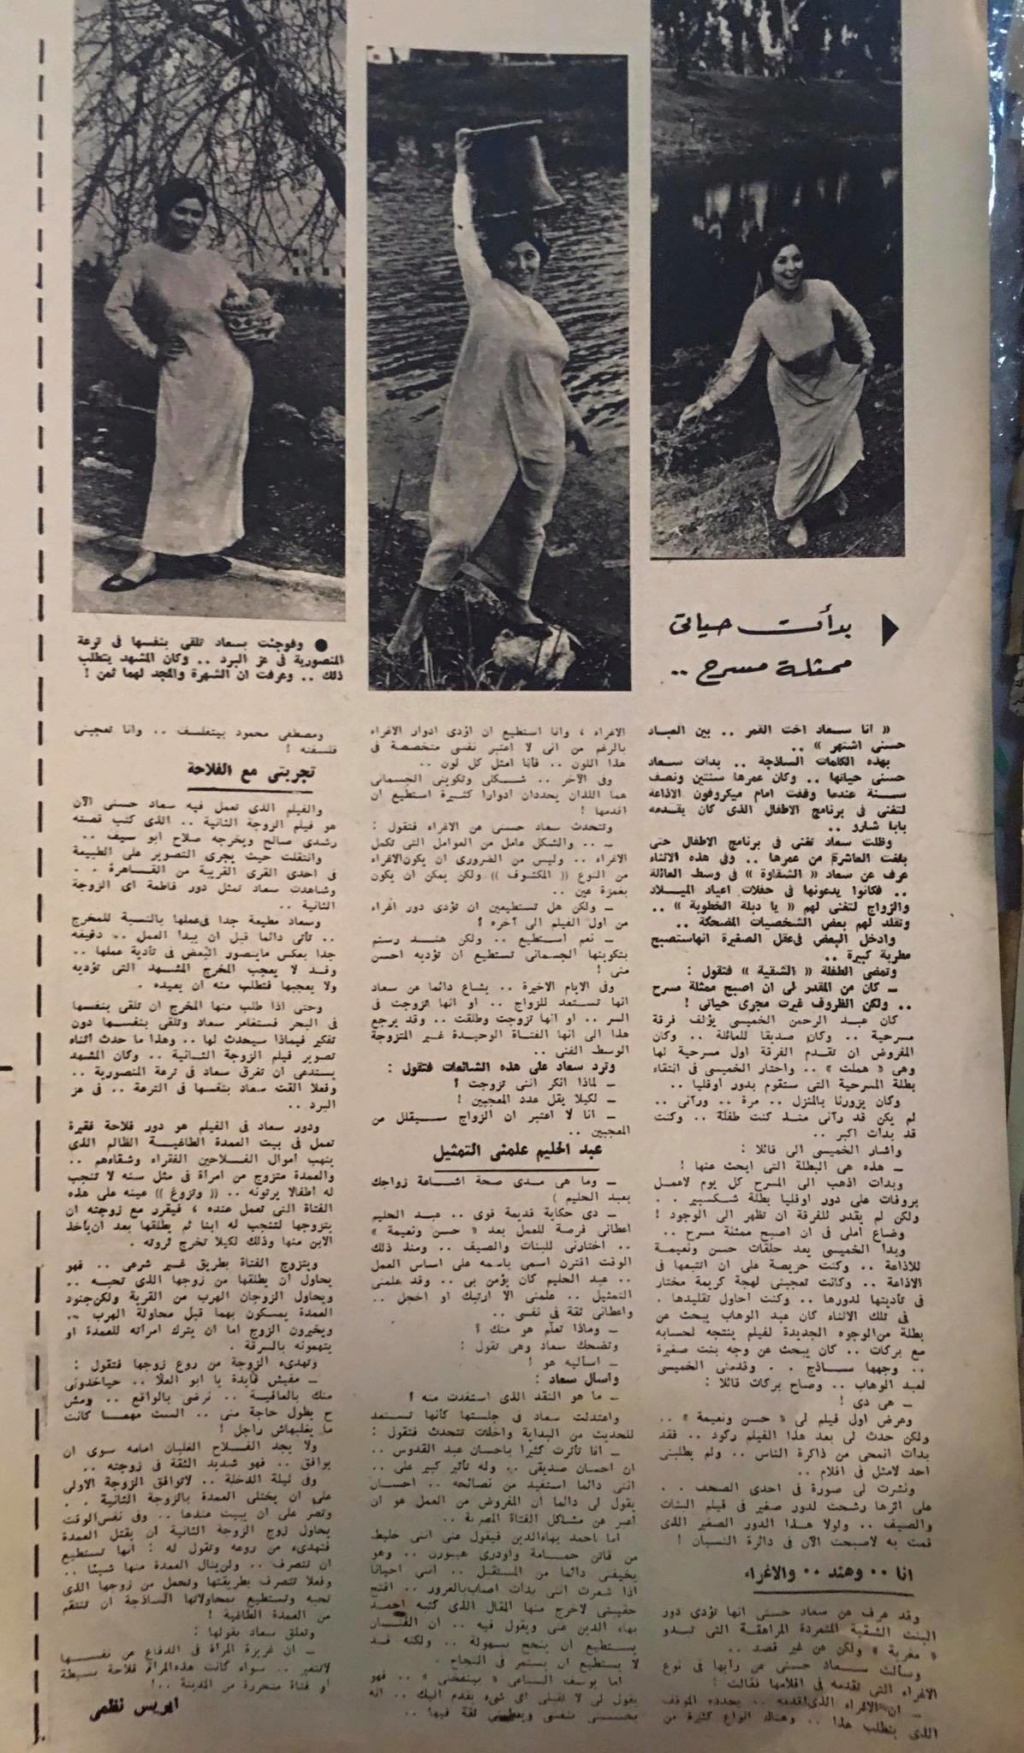 حوار صحفي : عندما غرقت سعاد حسني في ترعة المنصورية ! 1967 م 2404